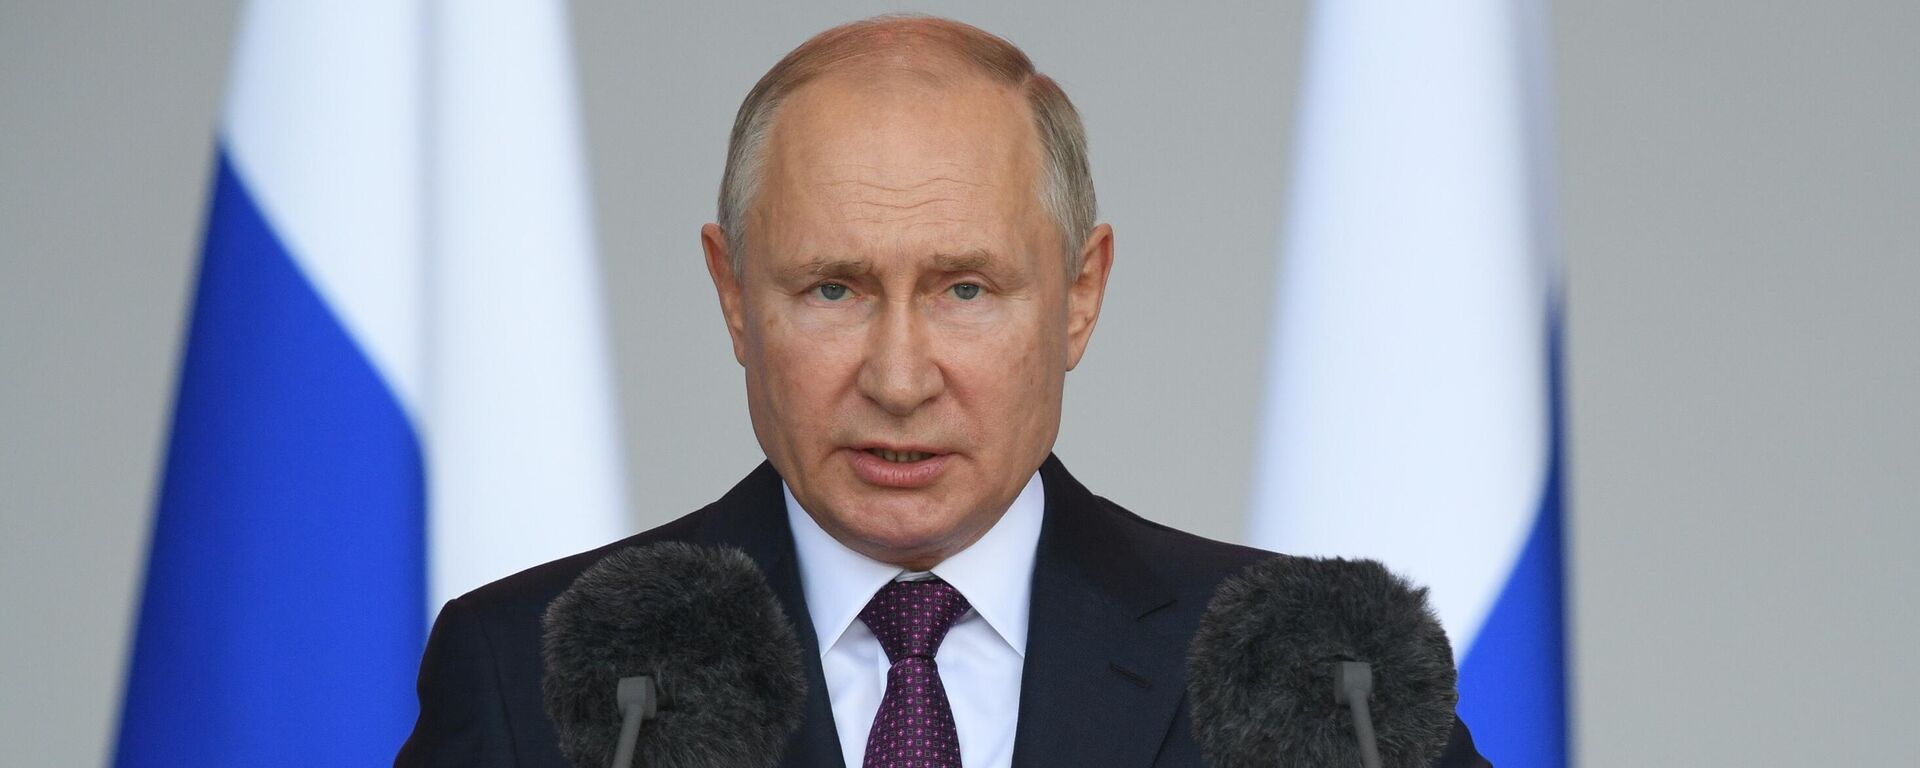 Президент РФ Владимир Путин - Sputnik Таджикистан, 1920, 24.08.2021